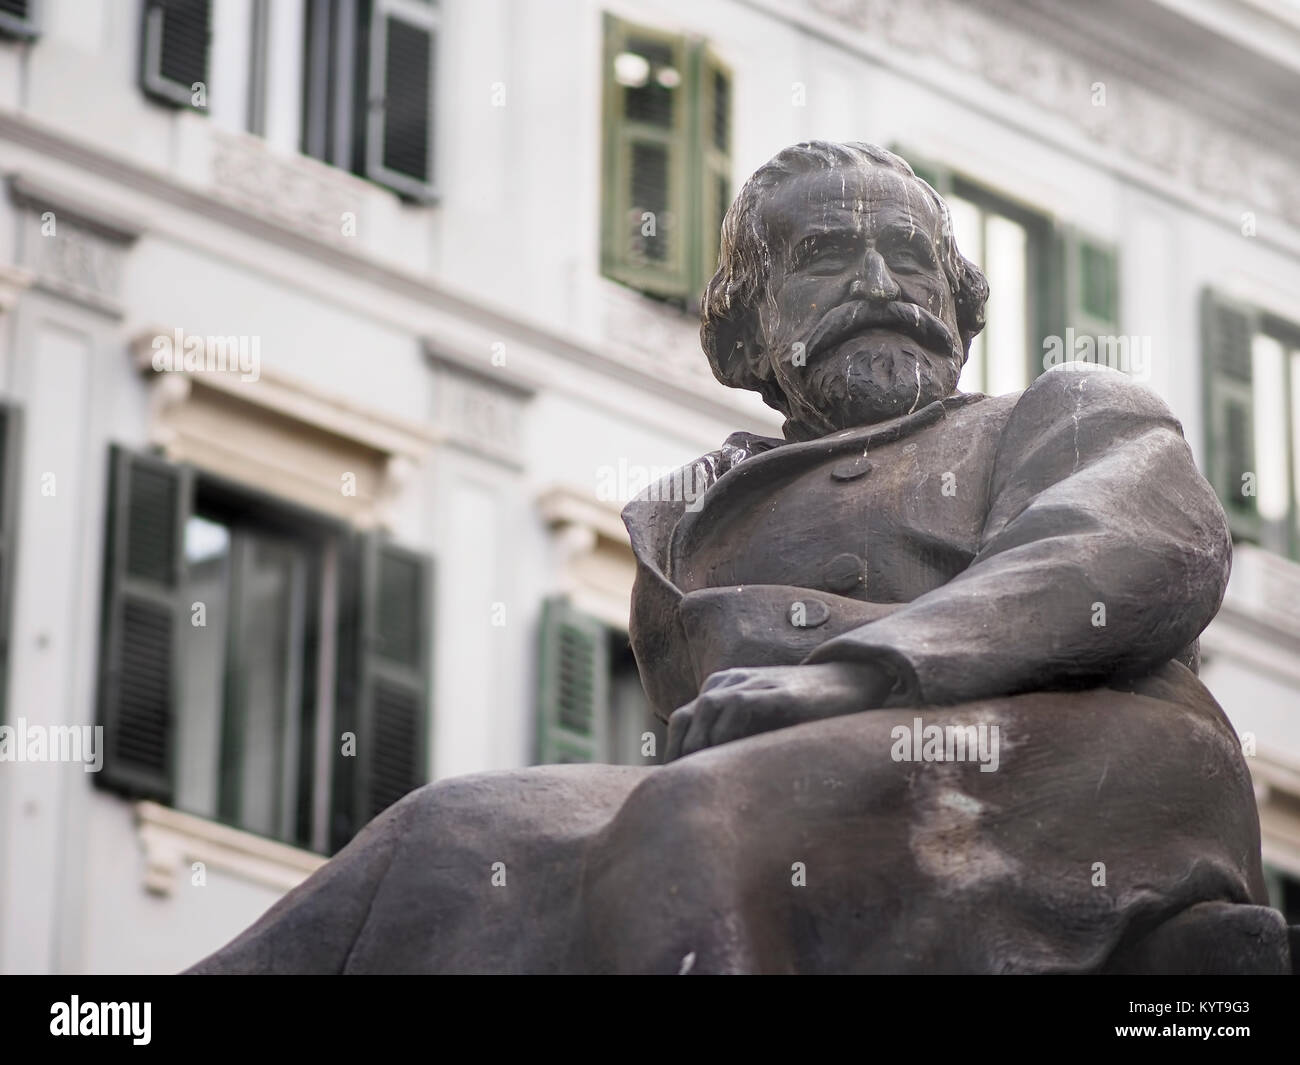 Denkmal von Giuseppe Verdi, der berühmte italienische Komponist, in einer öffentlichen Straße. Stockfoto